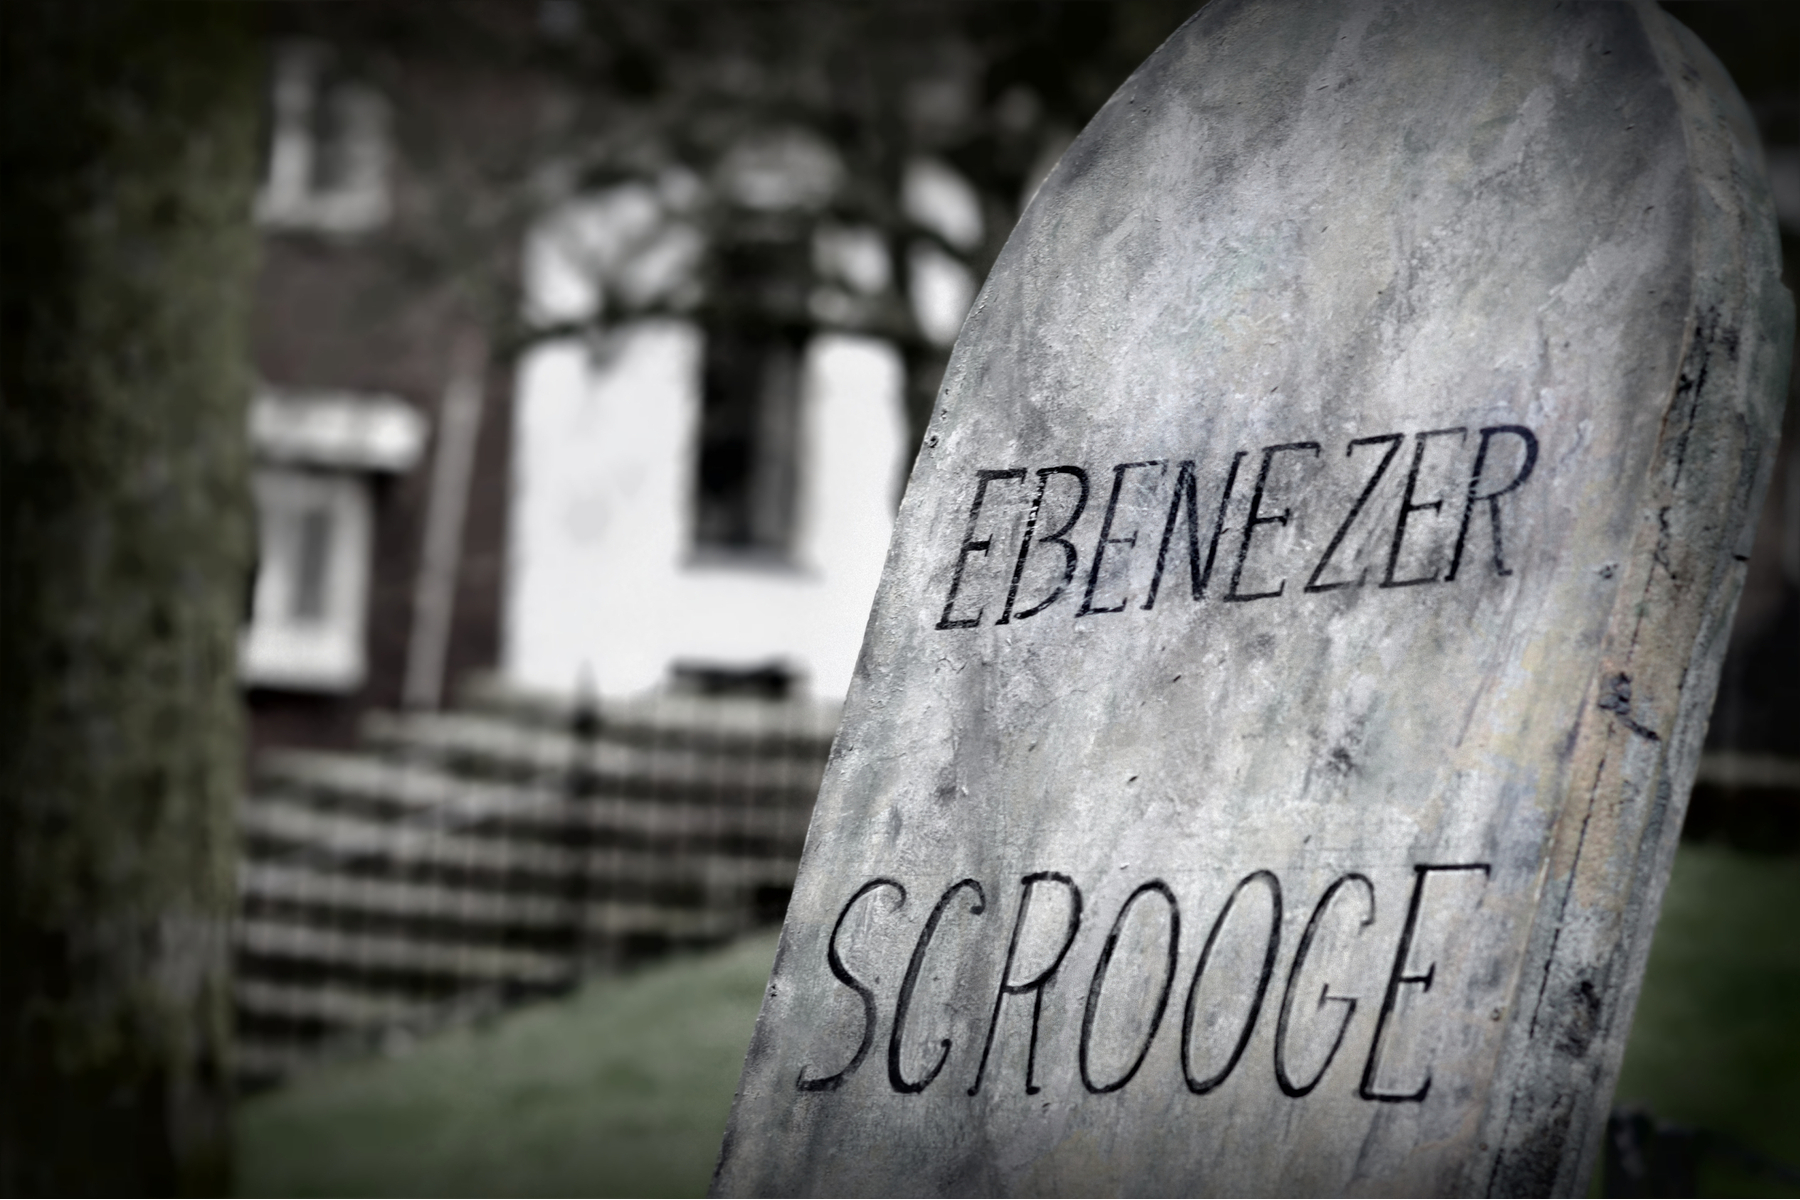 The grave of Ebenezer Scrooge